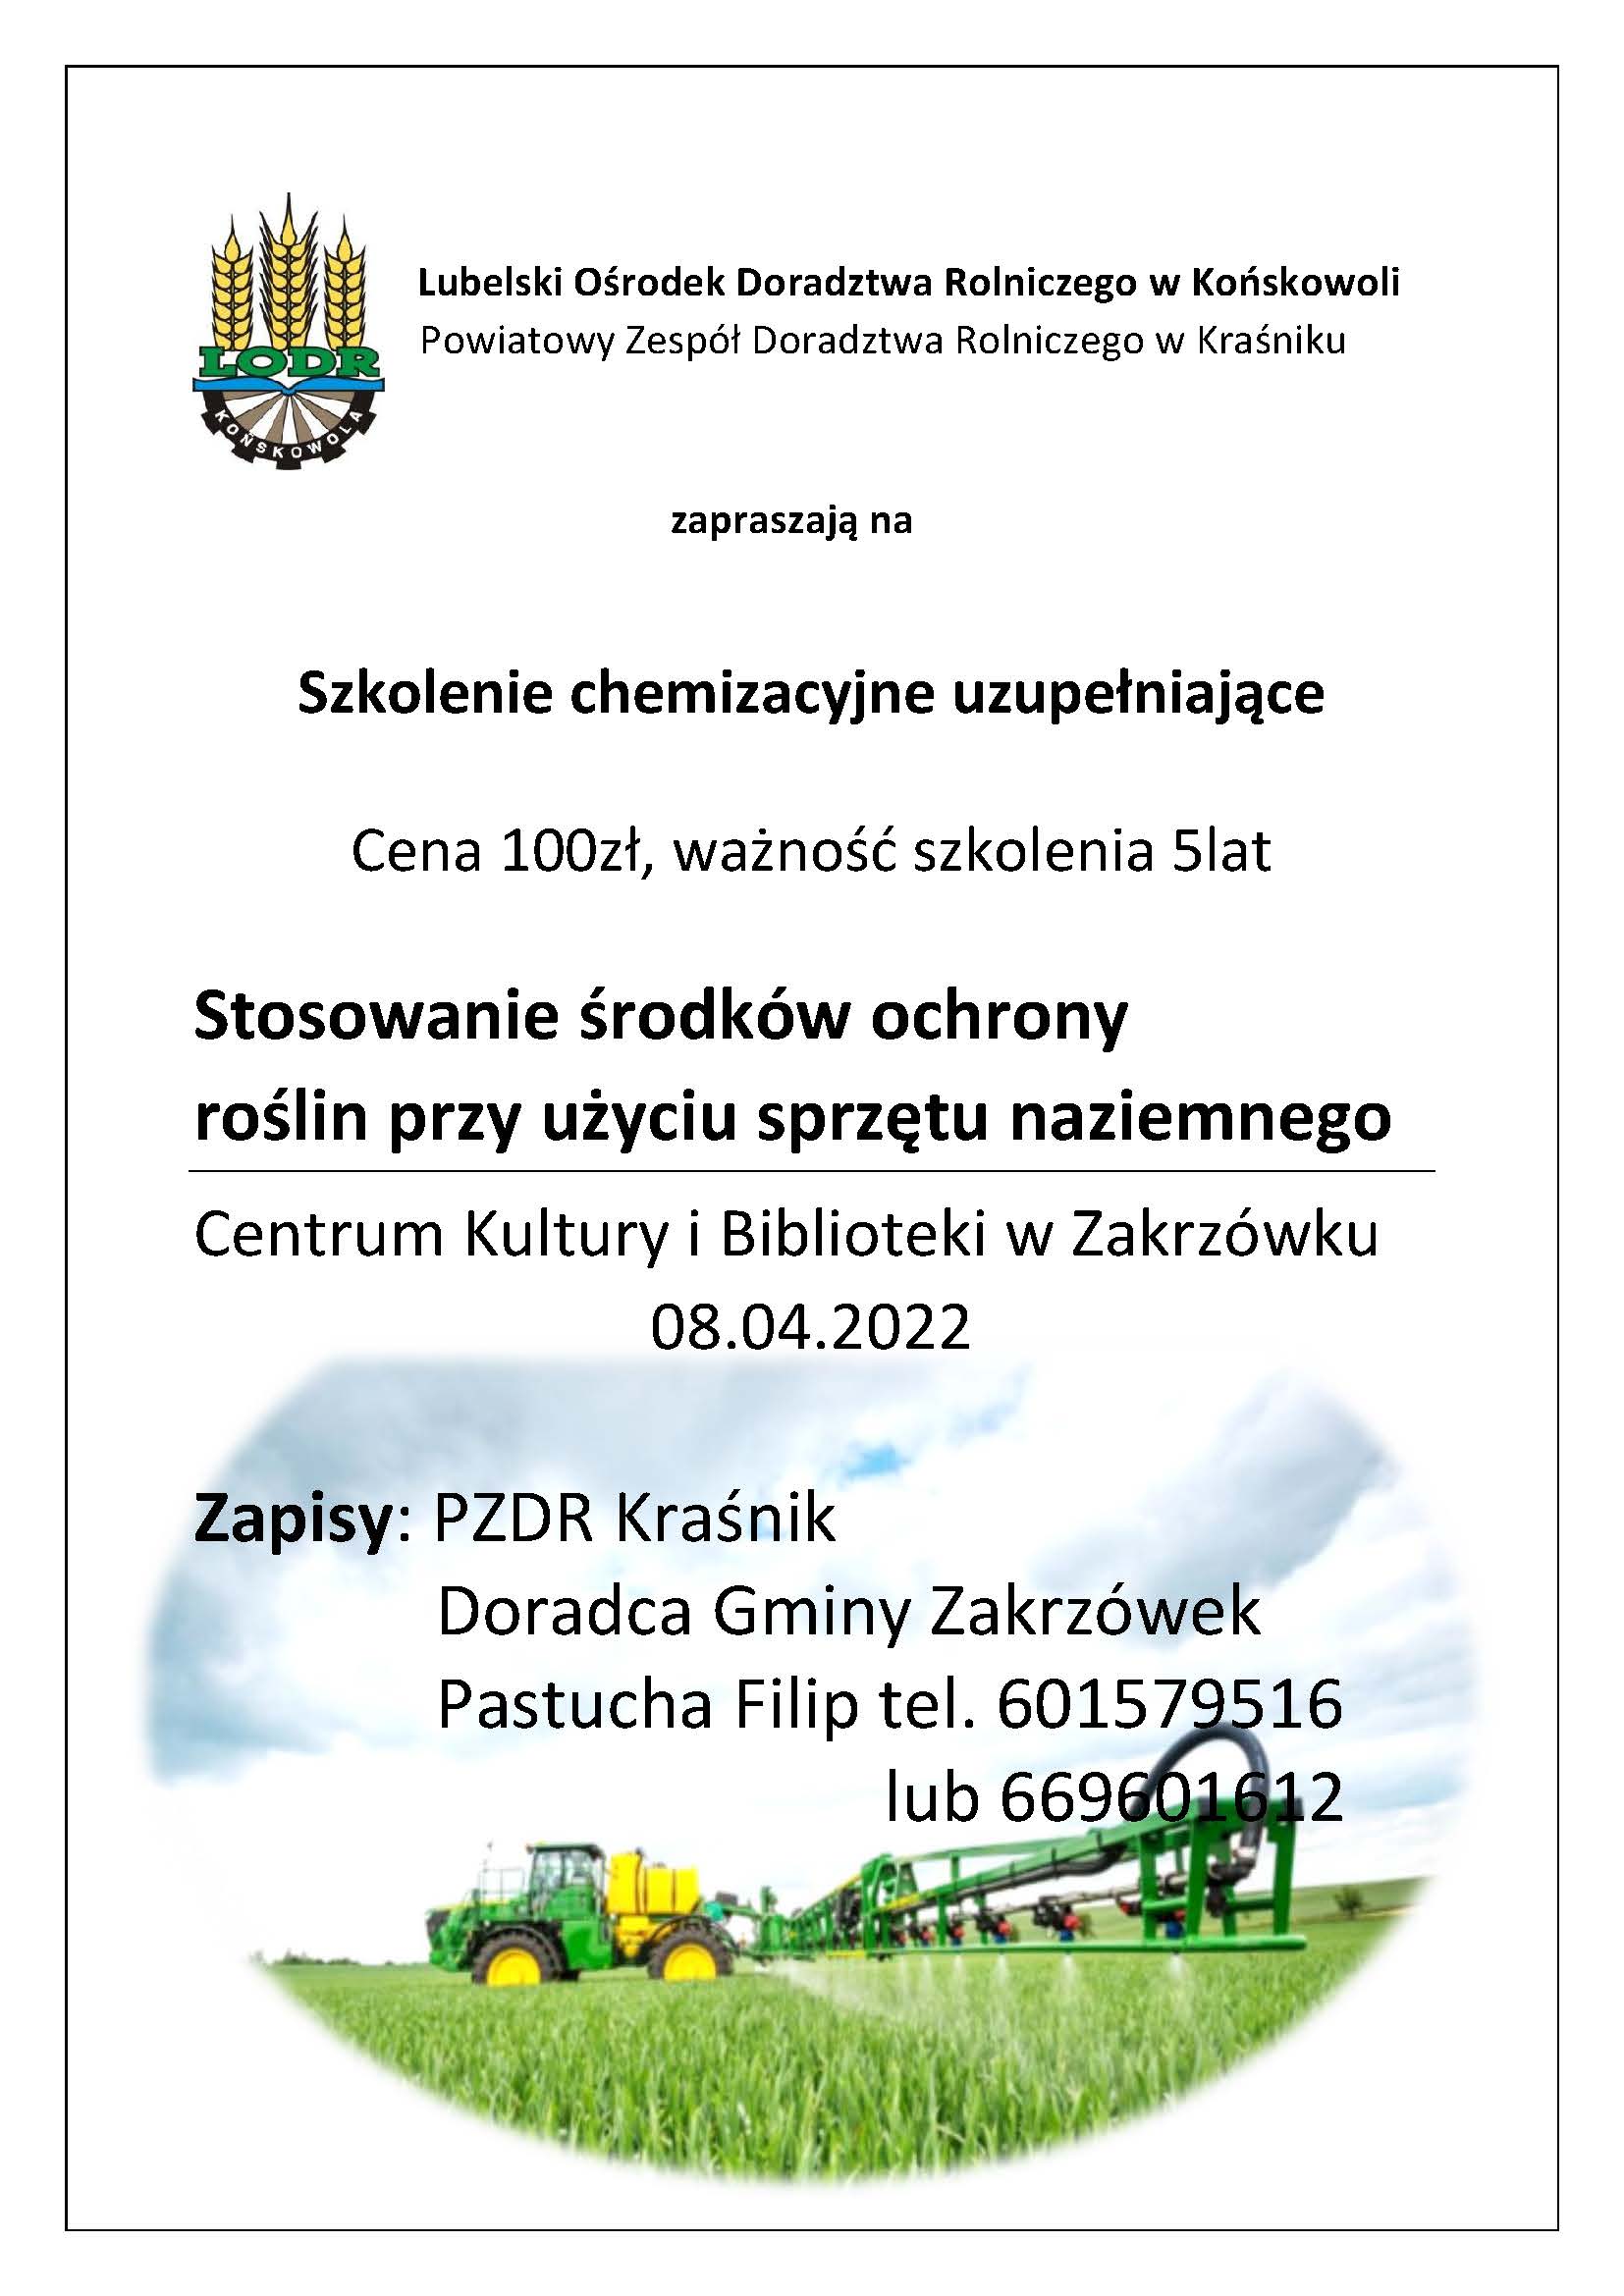 Ogłoszenie o szkoleniu chemizacyjnym organizowanym przez LODR w Końskowoli